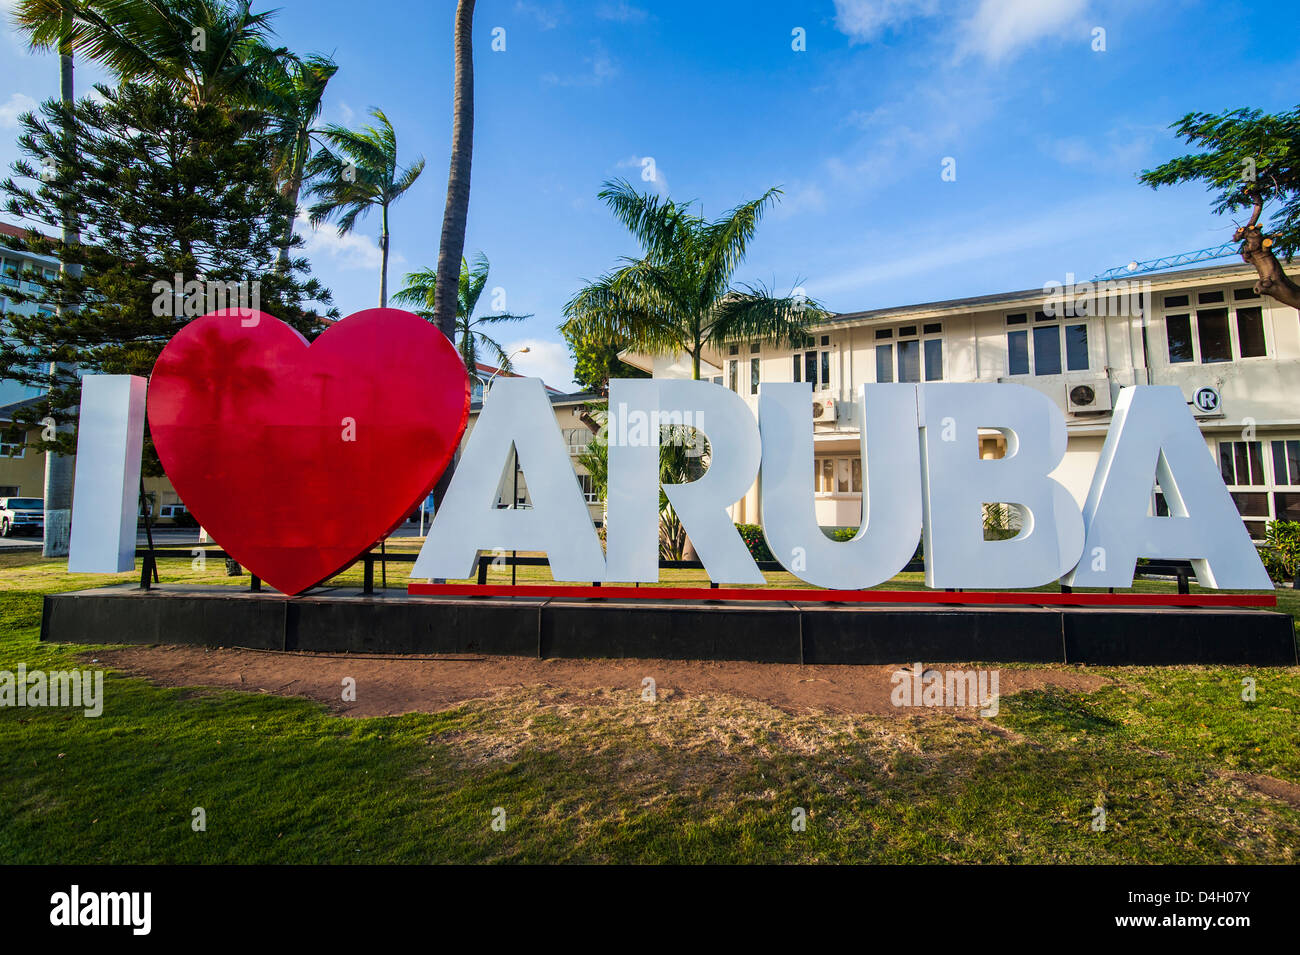 Ich liebe Aruba Zeichen in der Innenstadt von Oranjestad, Hauptstadt von Aruba, ABC-Inseln, Niederländische Antillen, Karibik Stockfoto